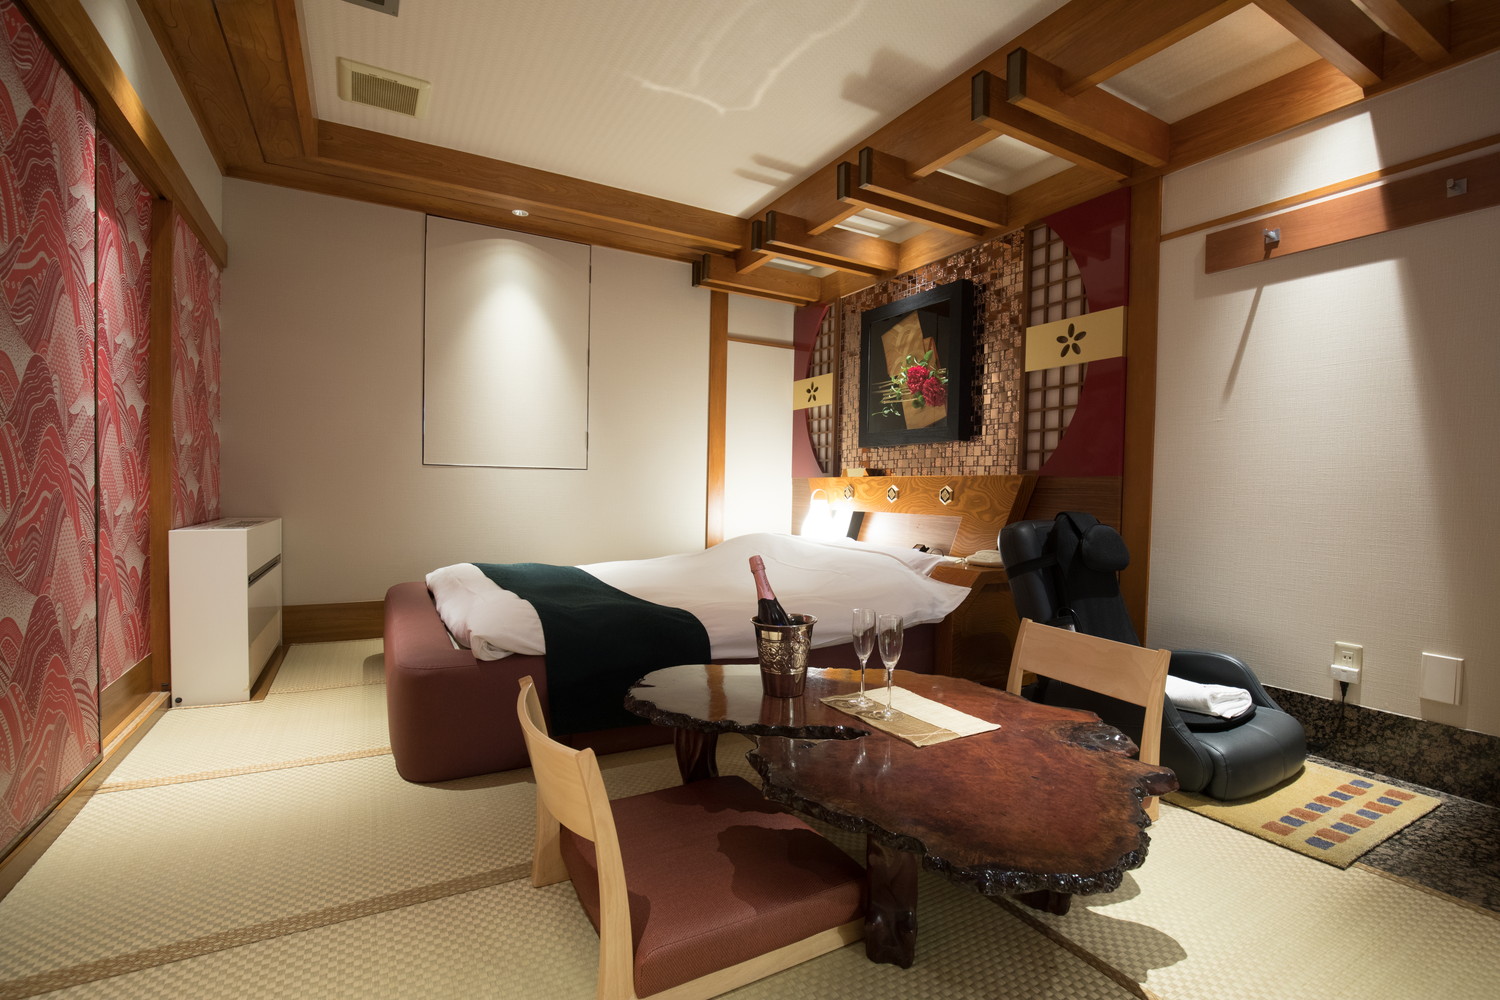 新宿 歌舞伎町の和室のあるラブホテル 公式 新宿 歌舞伎町のラブホテルperrier ペリエ